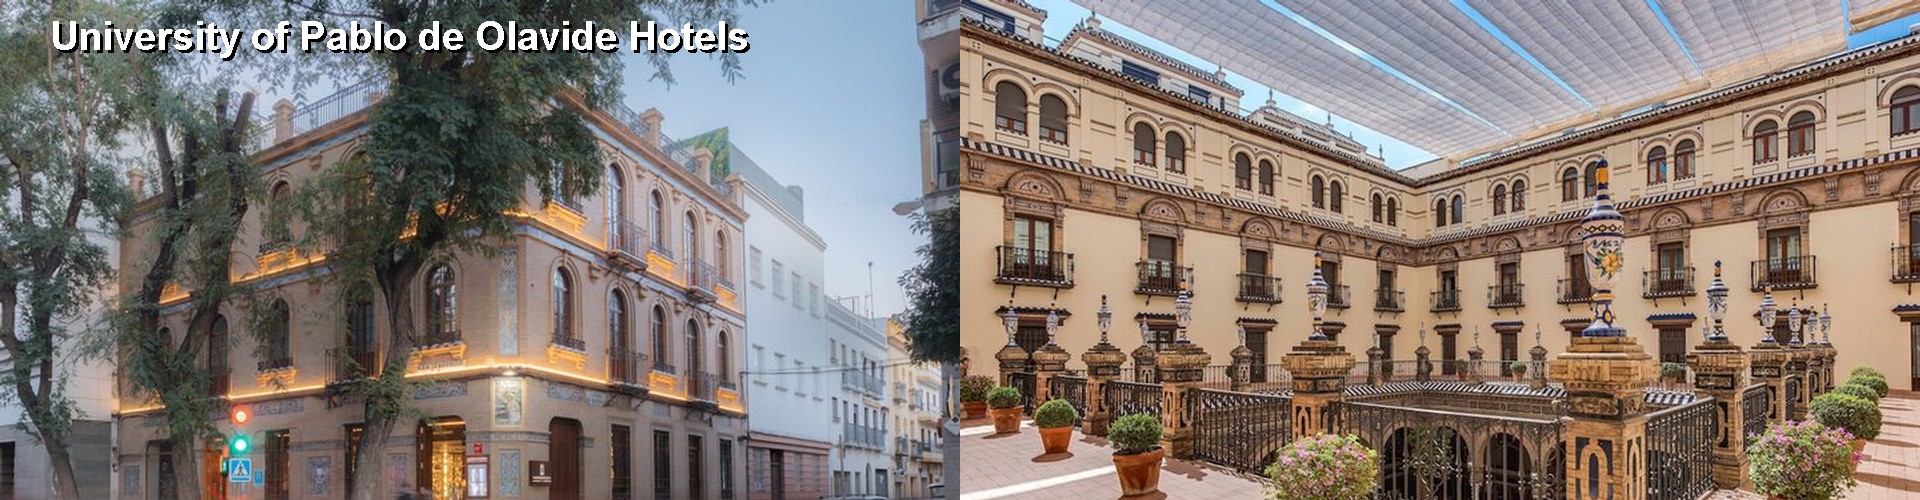 5 Best Hotels near University of Pablo de Olavide